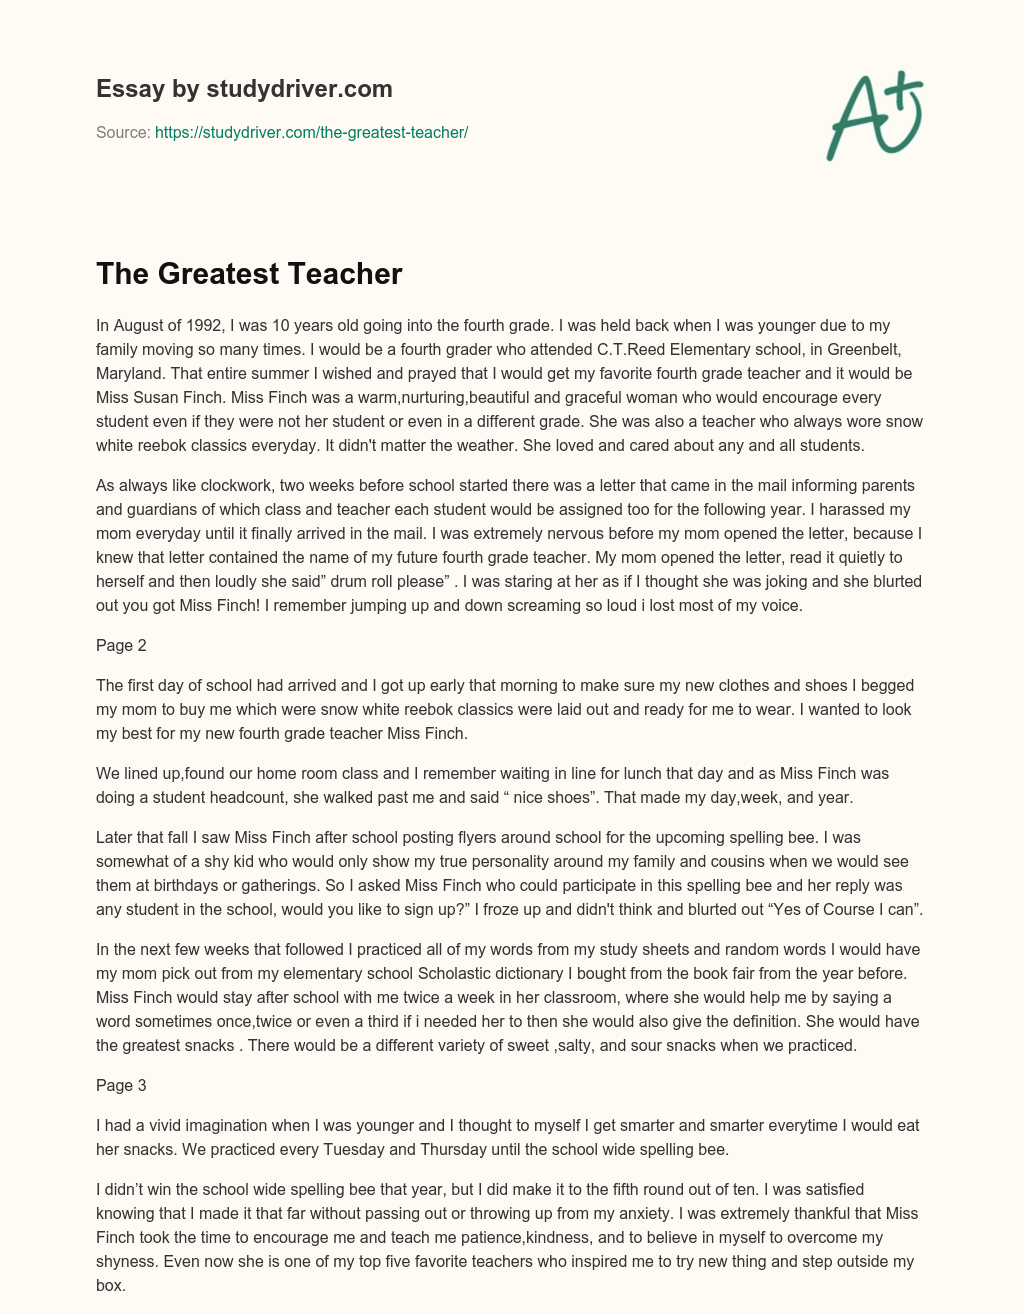 The Greatest Teacher essay